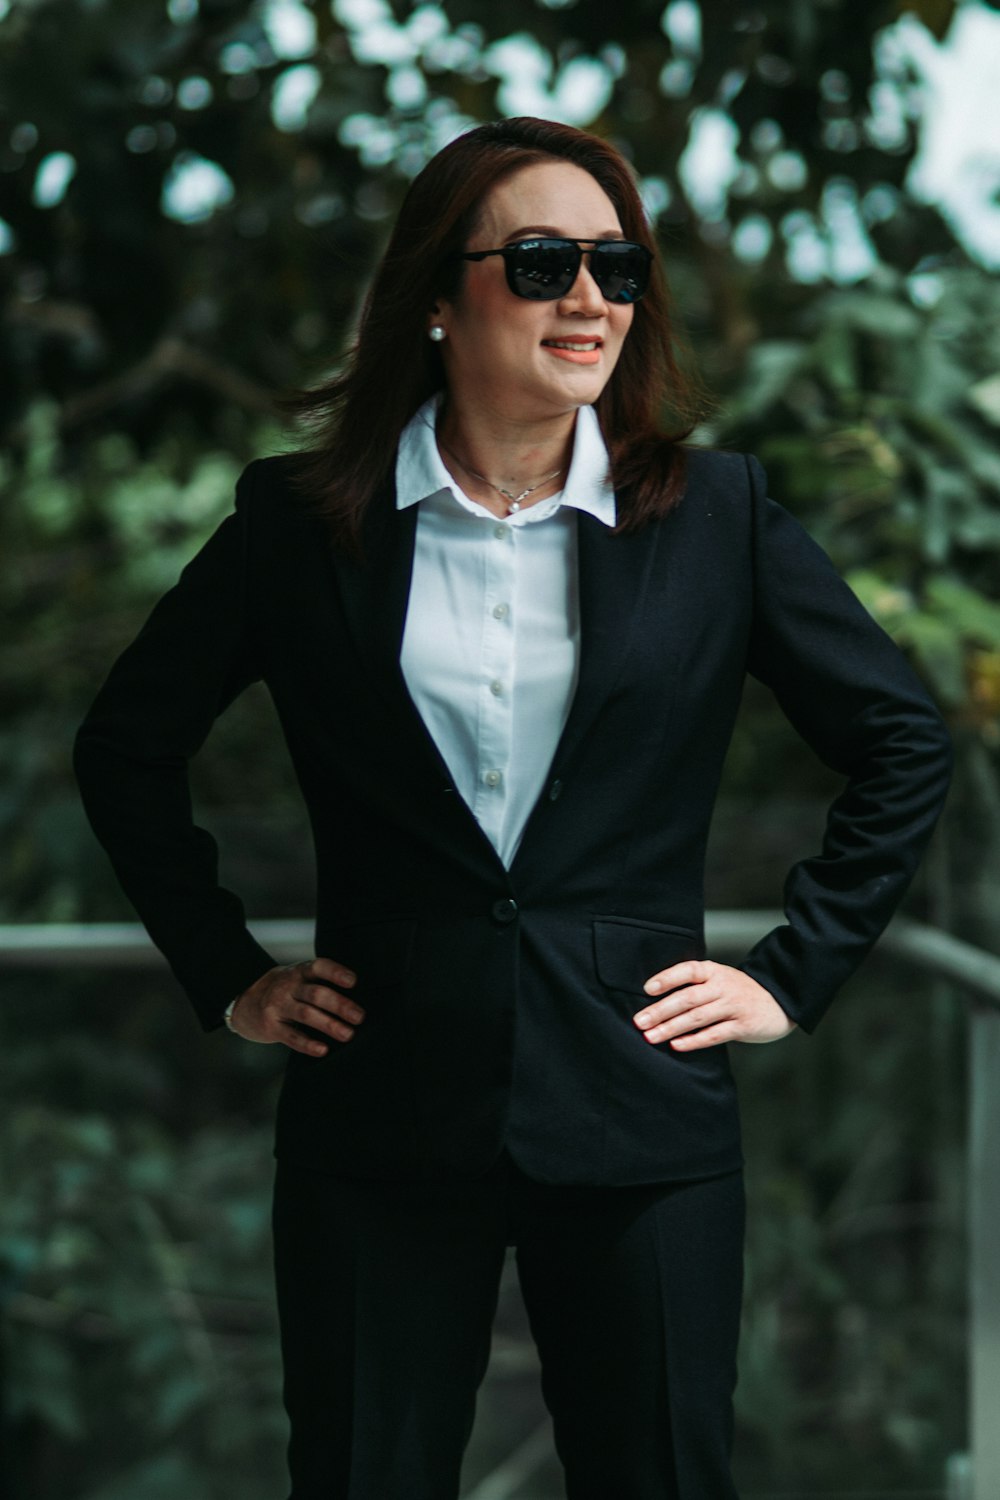 Une femme en costume et lunettes de soleil posant pour une photo